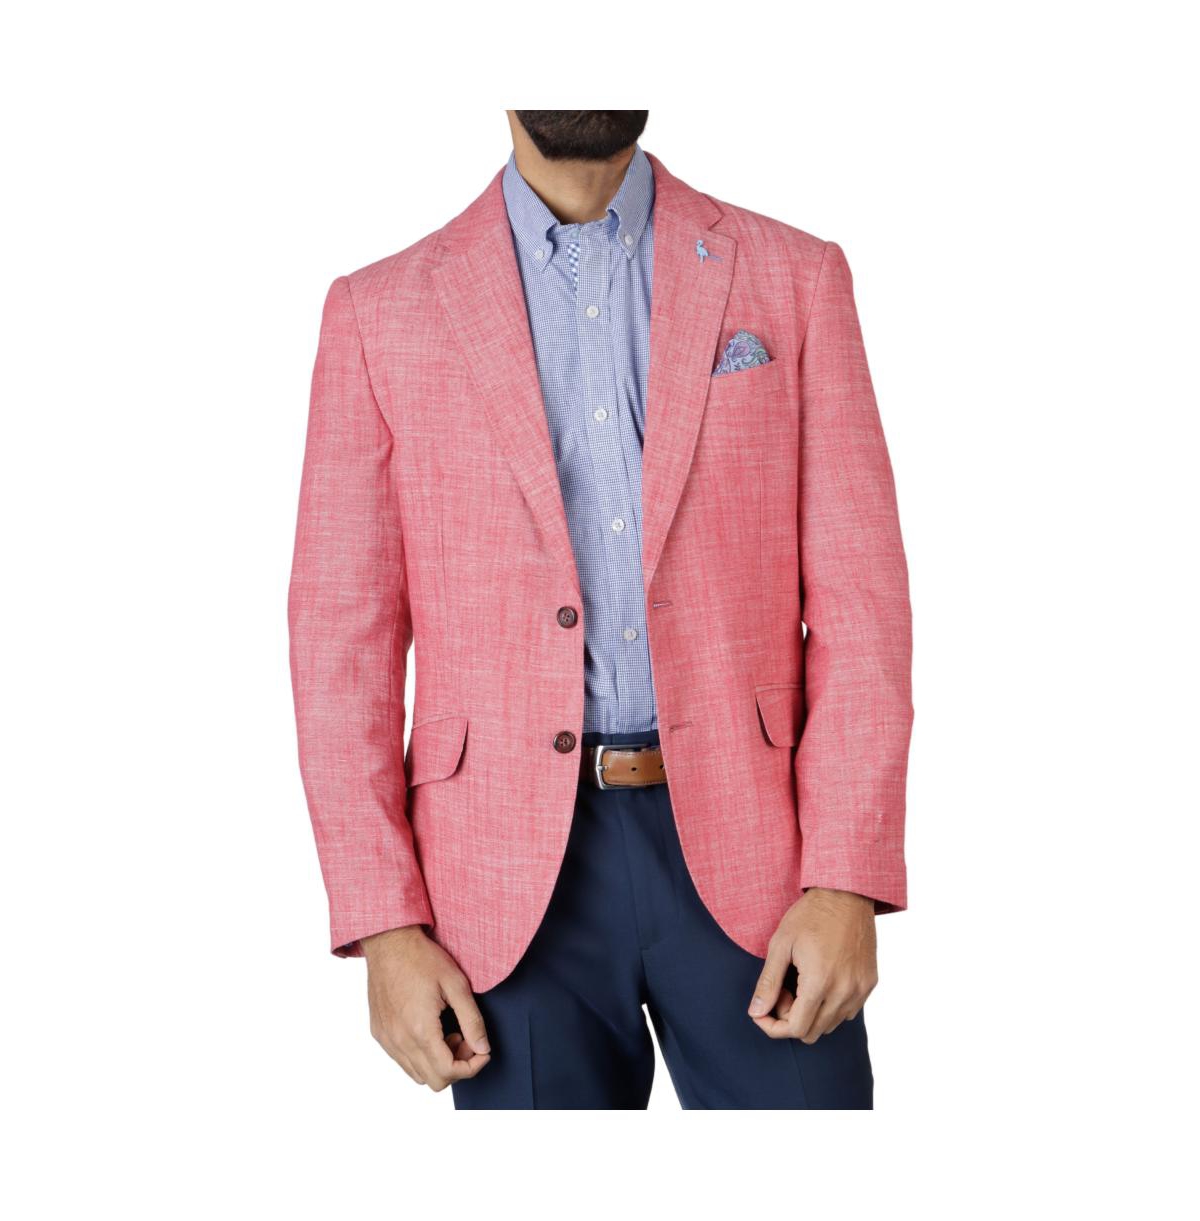 Men's Textured Solid Sportcoat - Nantucket red